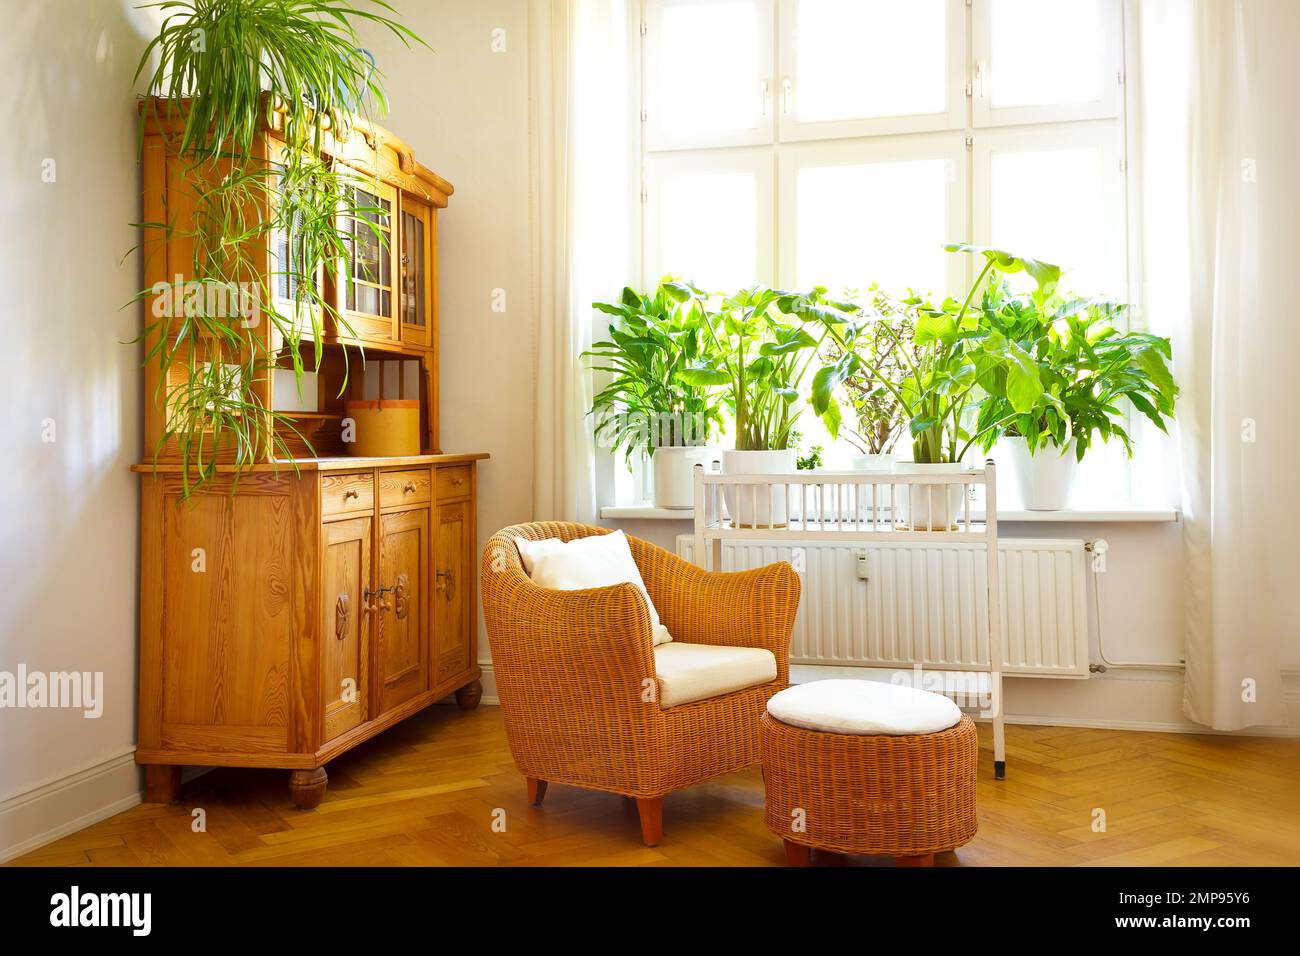 Sonniges Wohnzimmer in warmen Farben mit gemütlichem Korbsessel und Ottomane, altem Schrank, vielen Pflanzen und großen Fenstern. Stockfoto